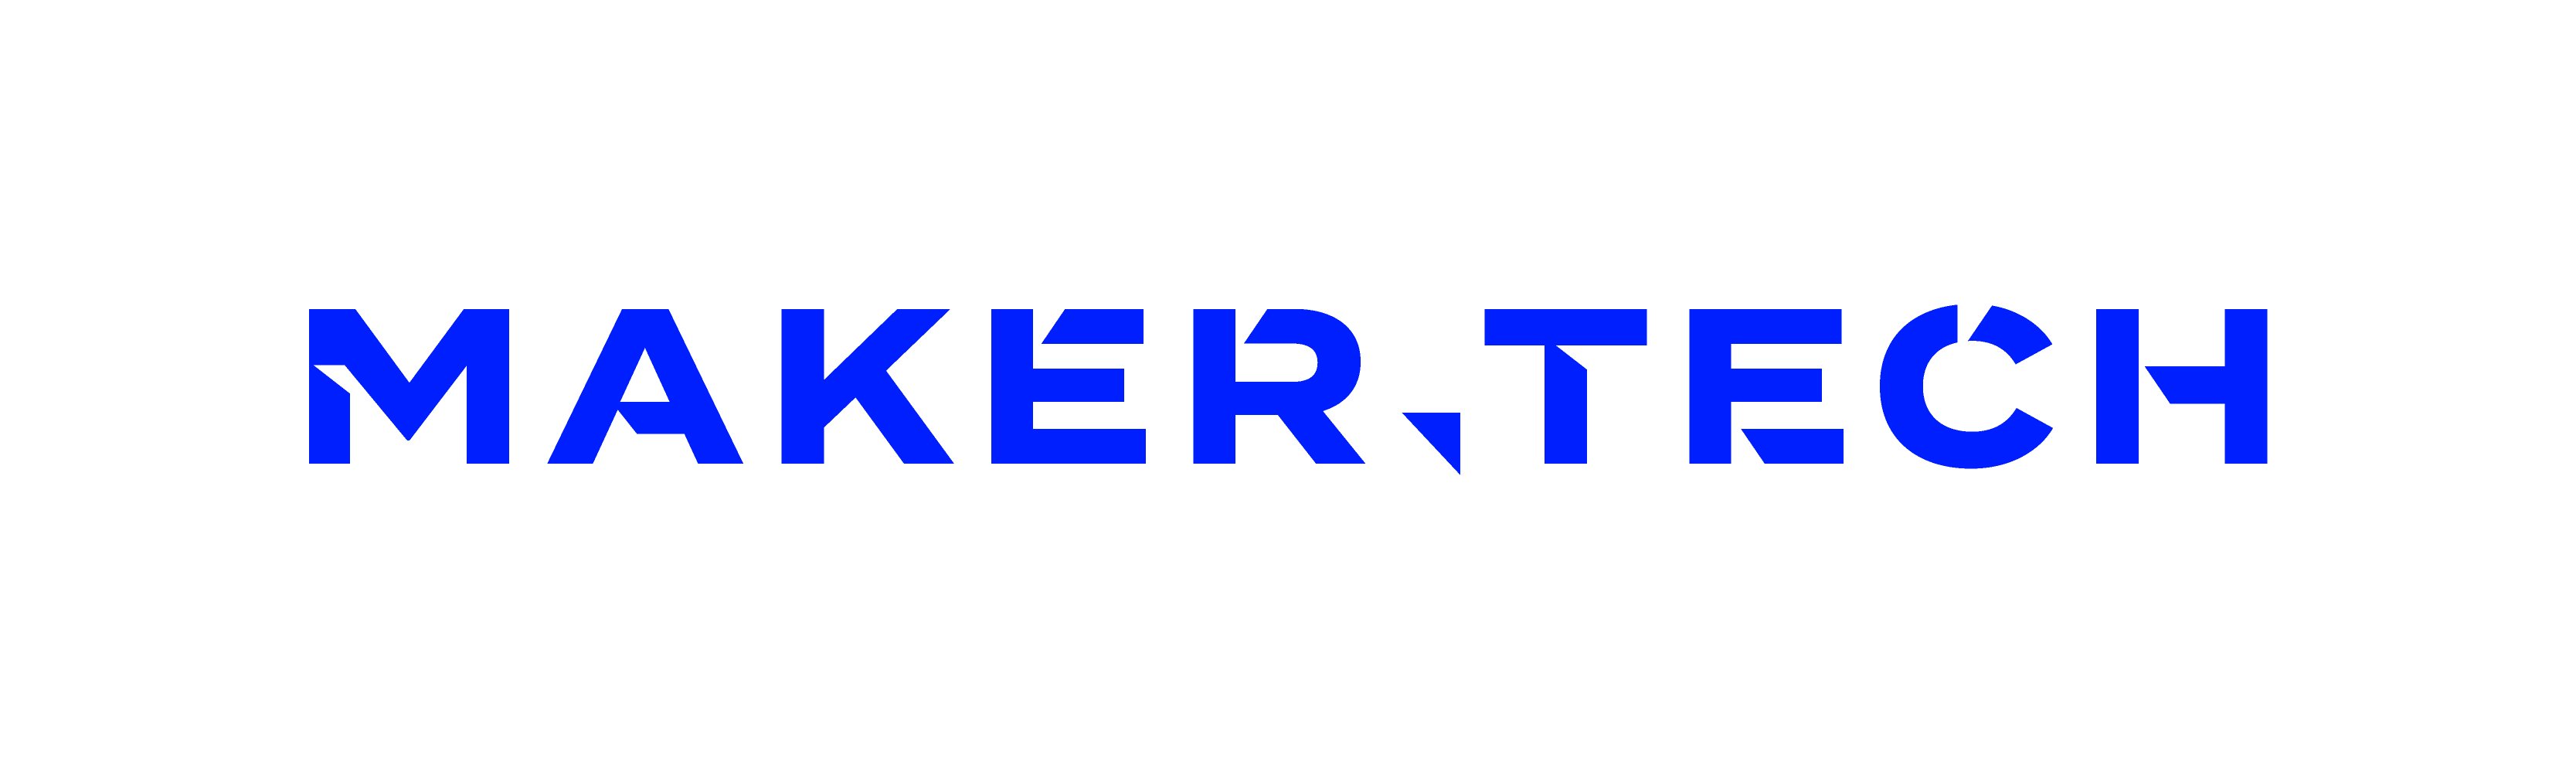 maker-tech logo2